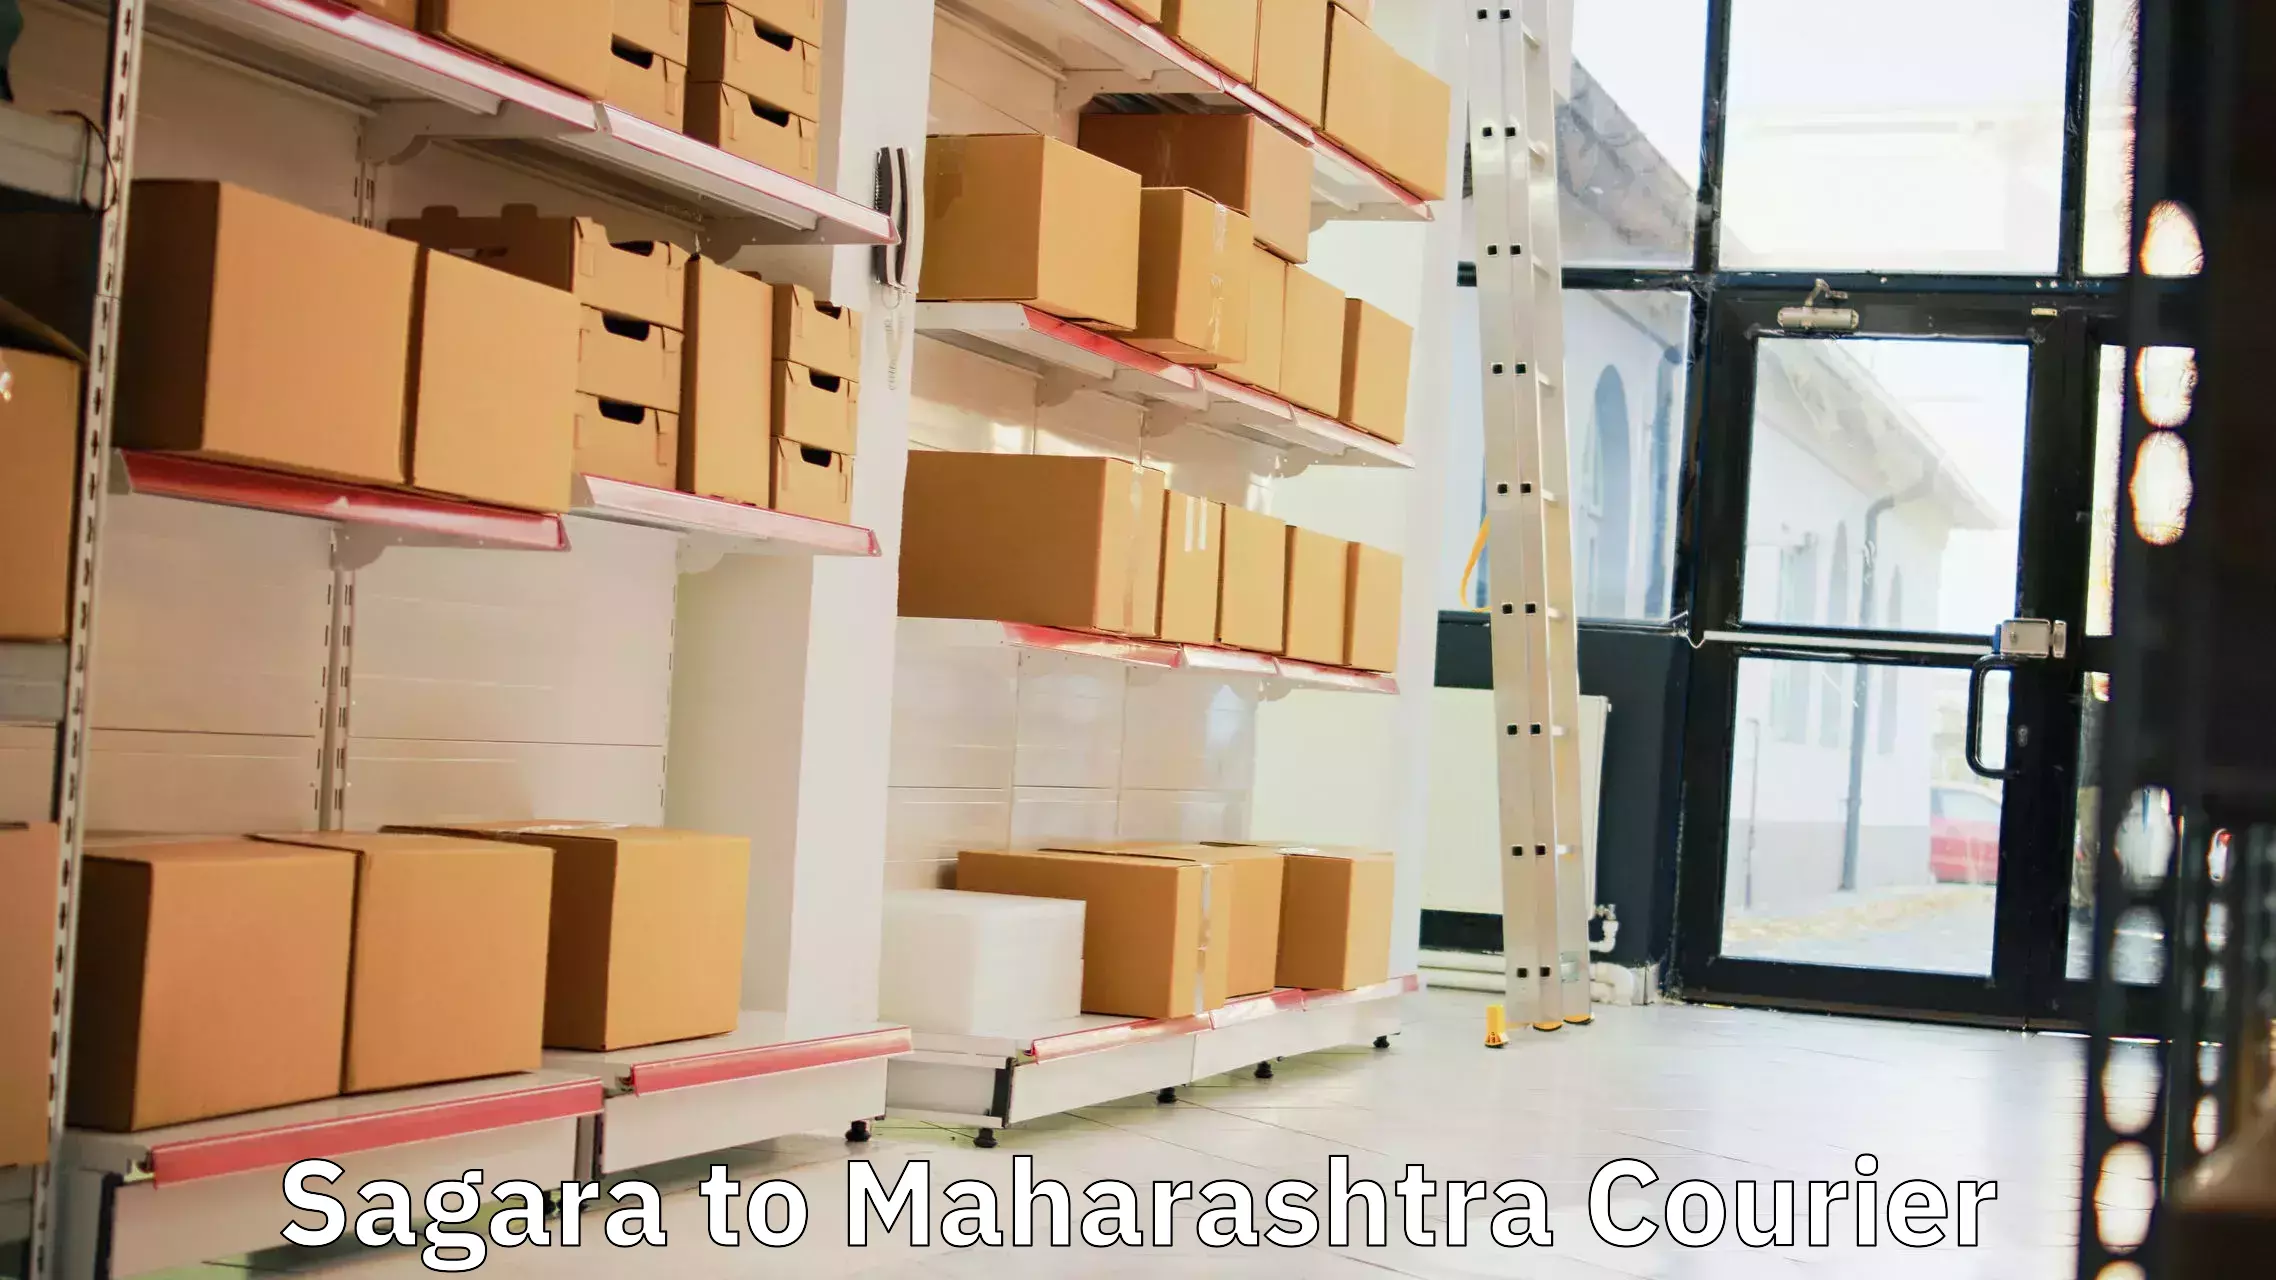 Digital shipping tools Sagara to Maharashtra